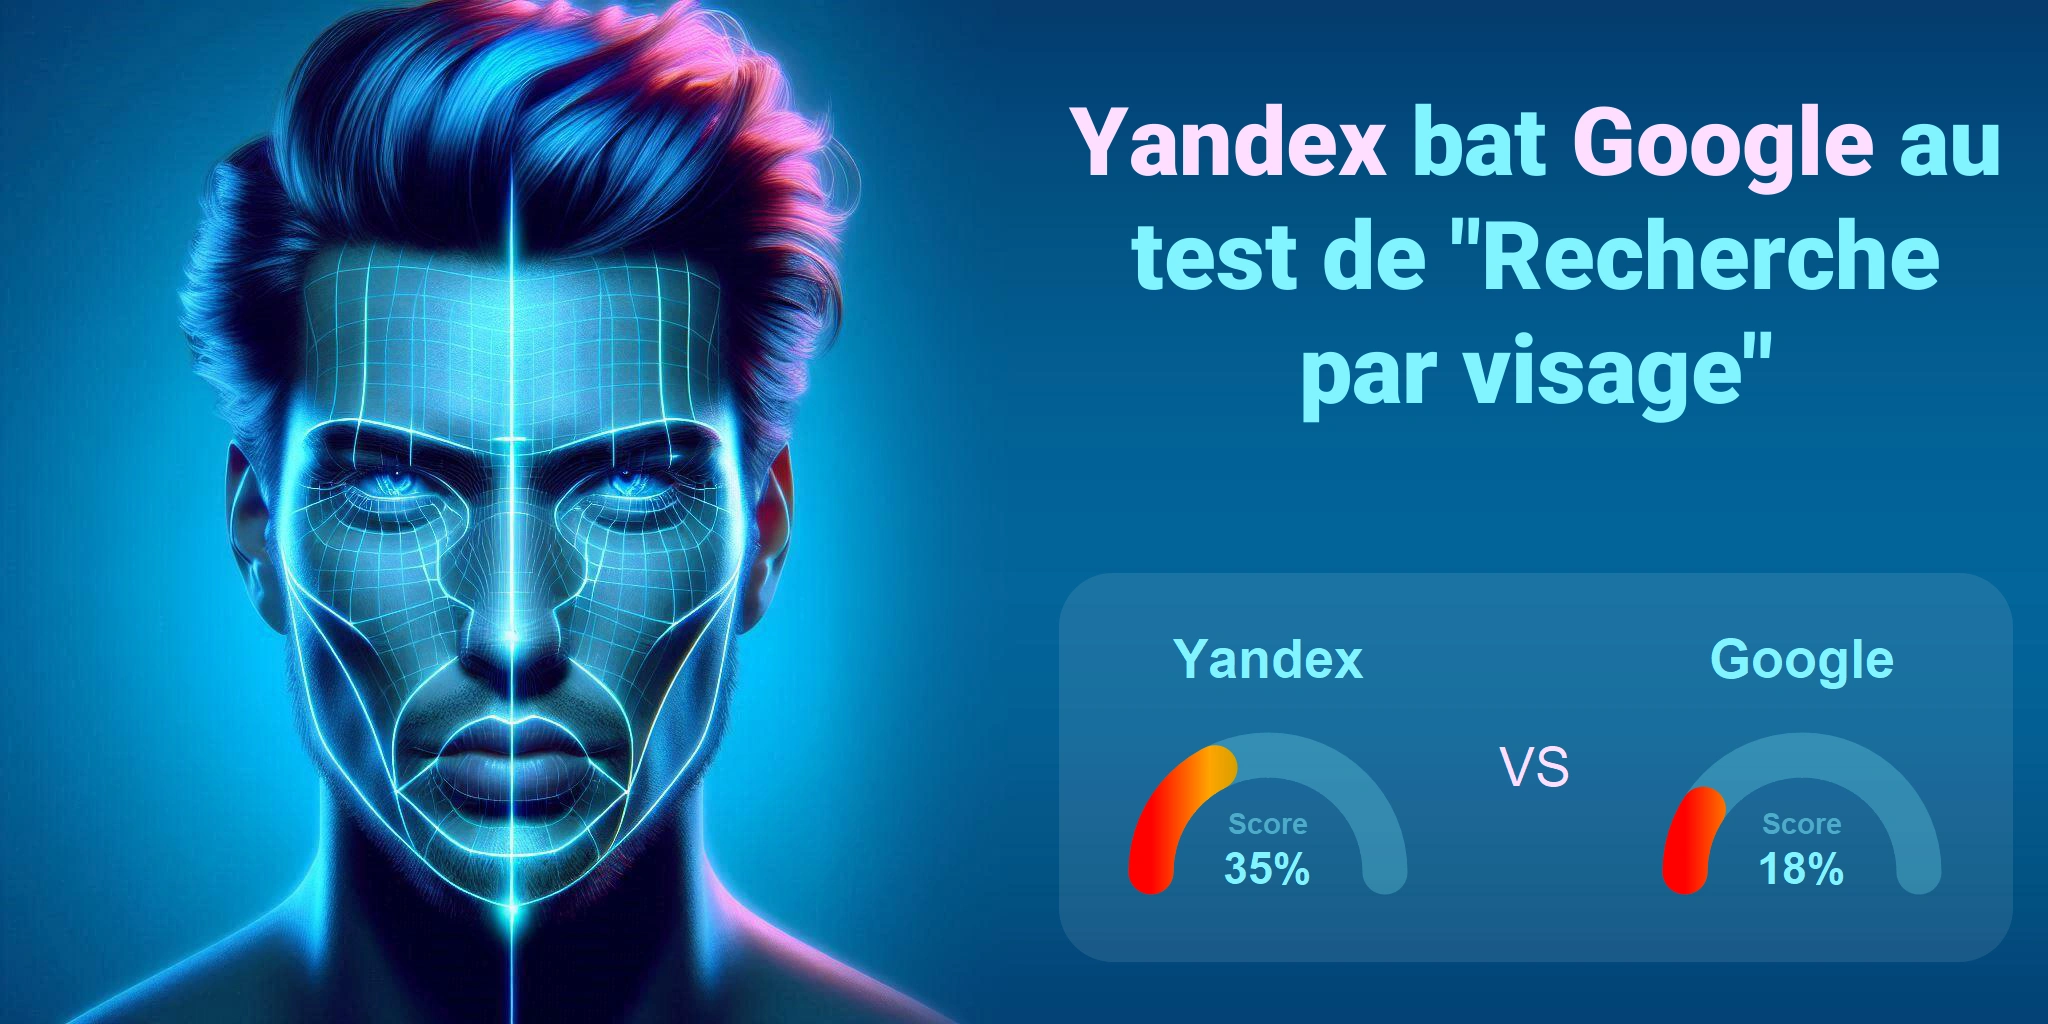 Quel est le meilleur pour la recherche faciale : <br>Google ou Yandex ?